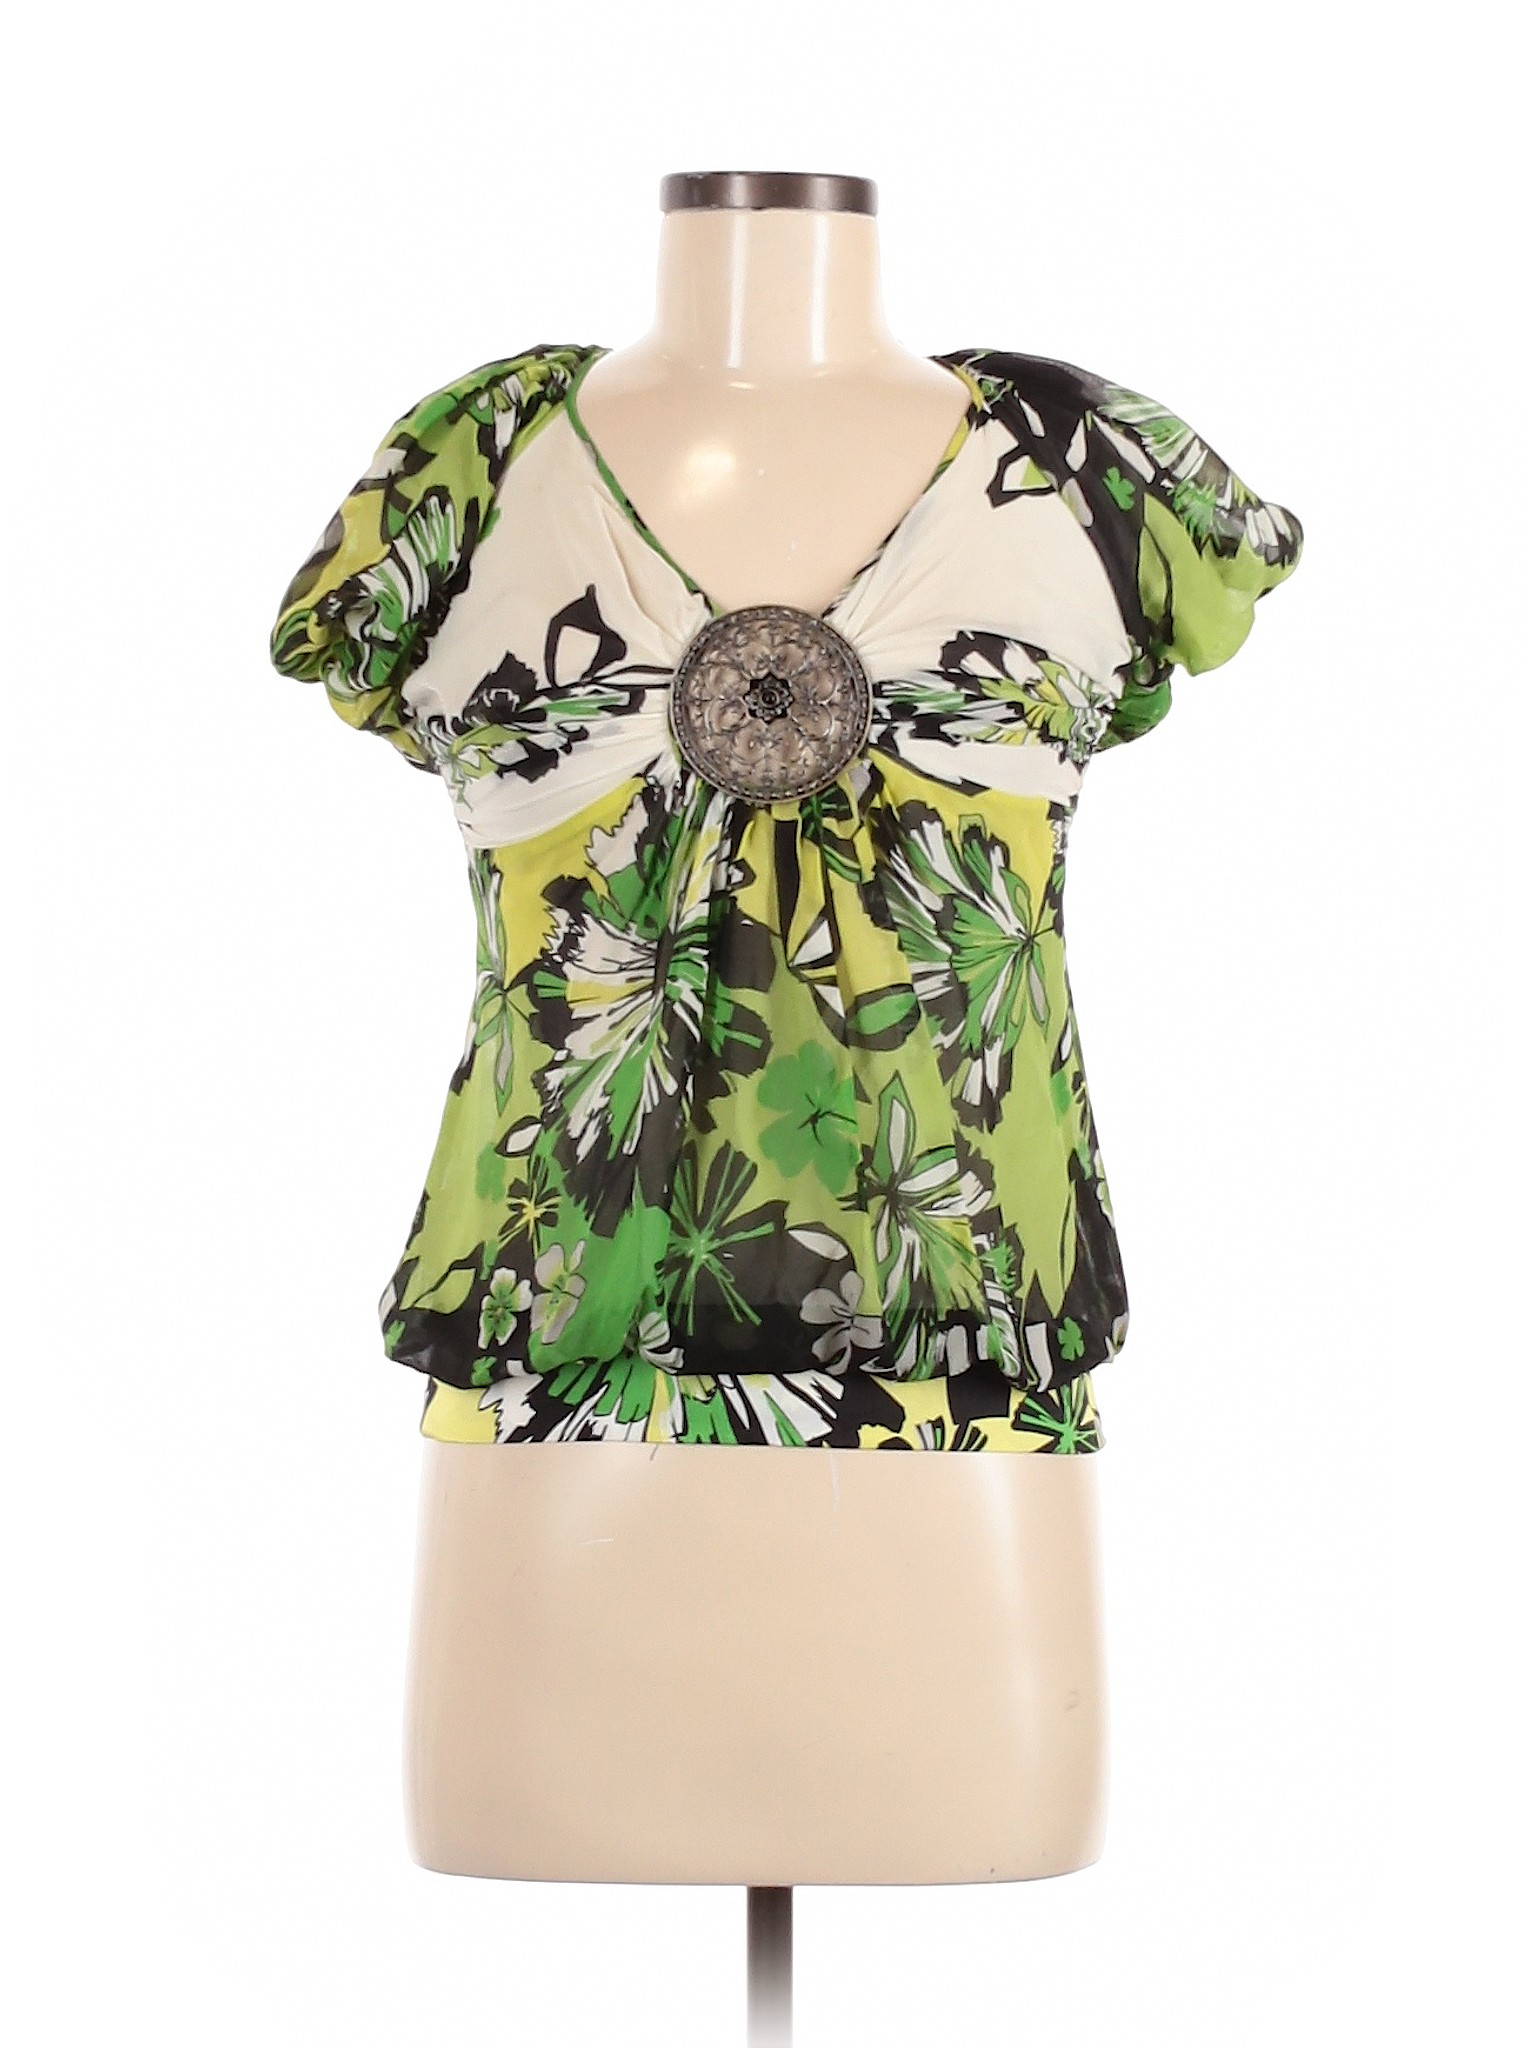 Bebe Women Green Short Sleeve Silk Top XS | eBay